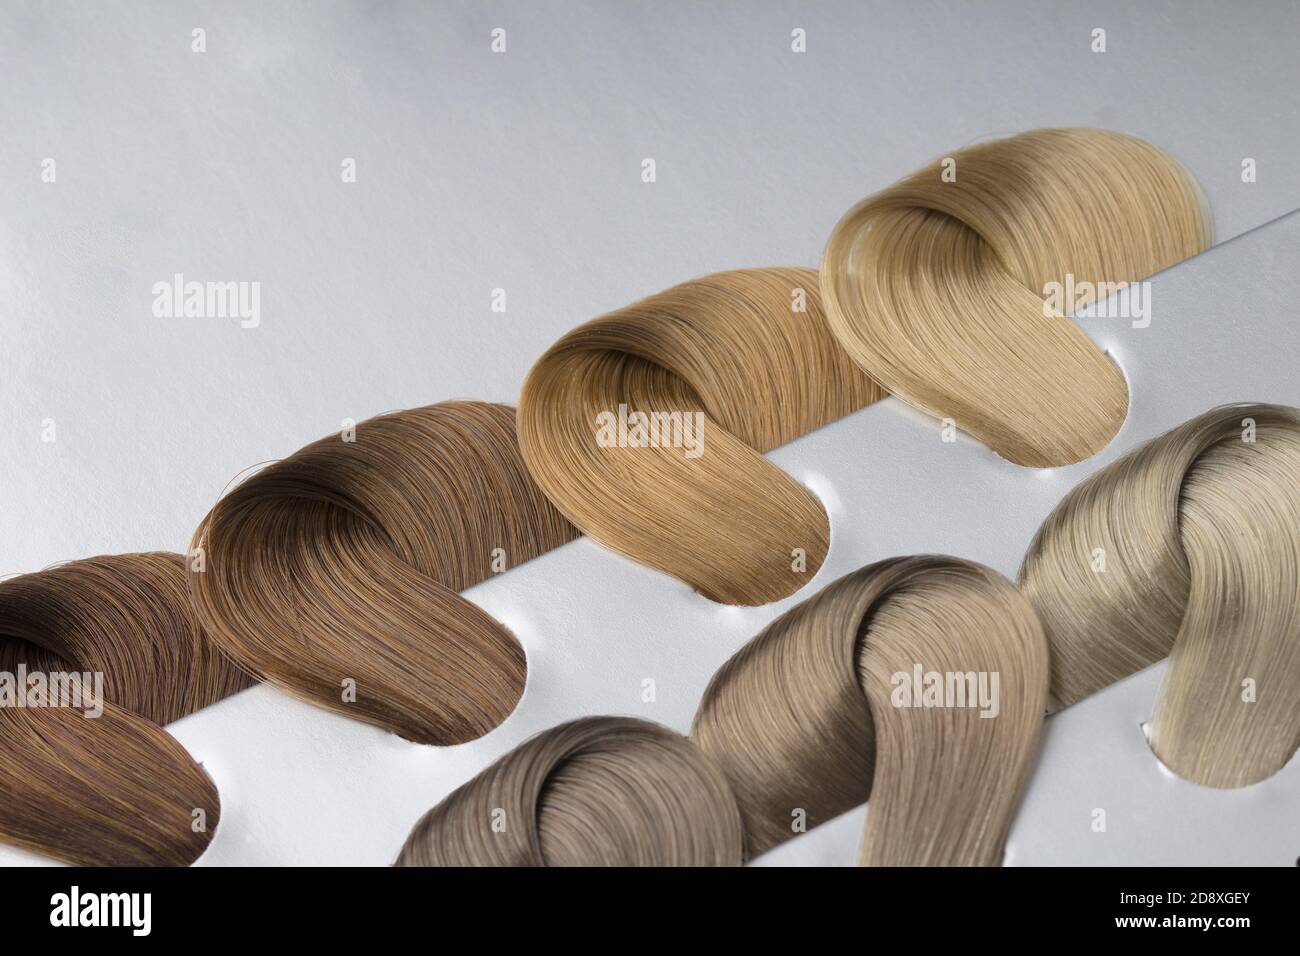 Différents types de nuances de cheveux blond et foncés. Concept de coloration des cheveux Banque D'Images